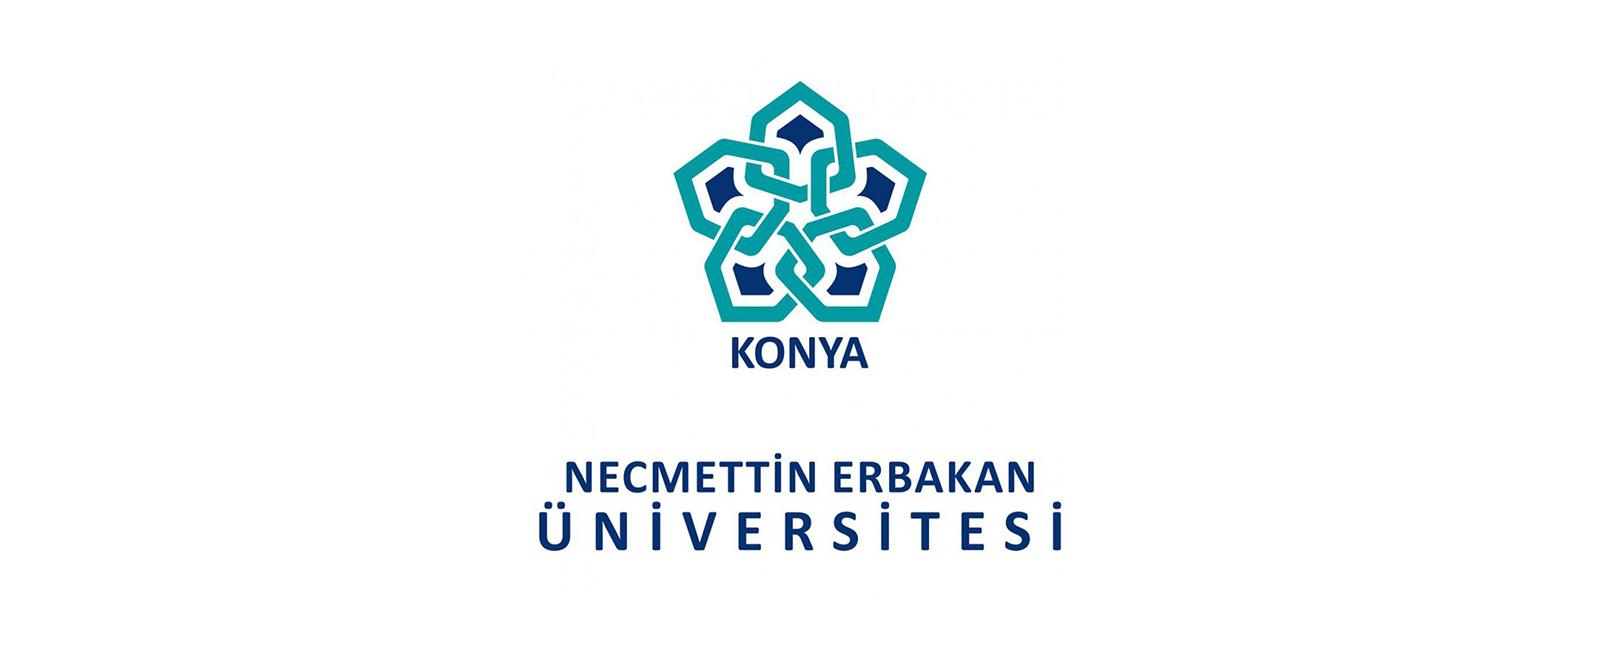 جامعة نجم الدين اربكان في قونية